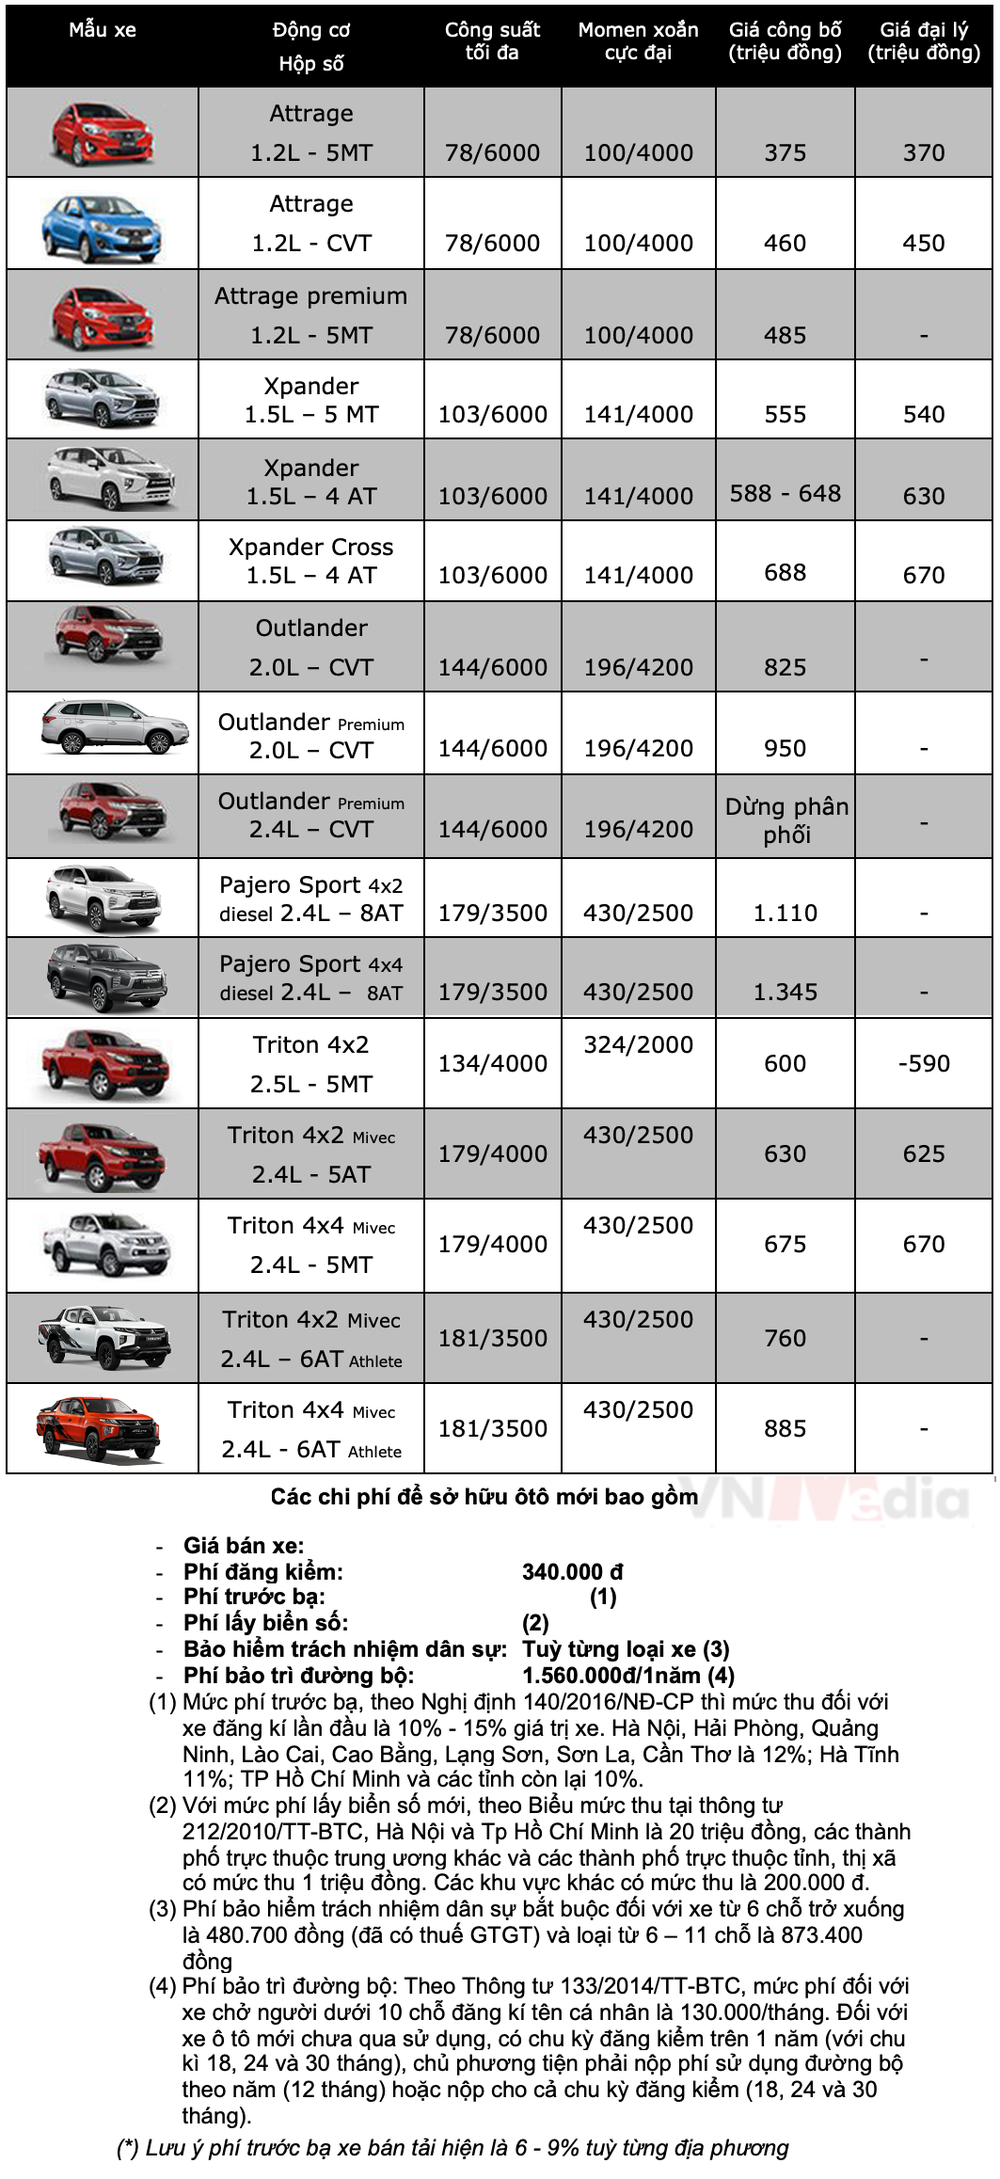 Bảng giá xe Mitsubishi tháng 2: Mitsubishi Xpander được ưu đãi 20 triệu đồng - Ảnh 2.